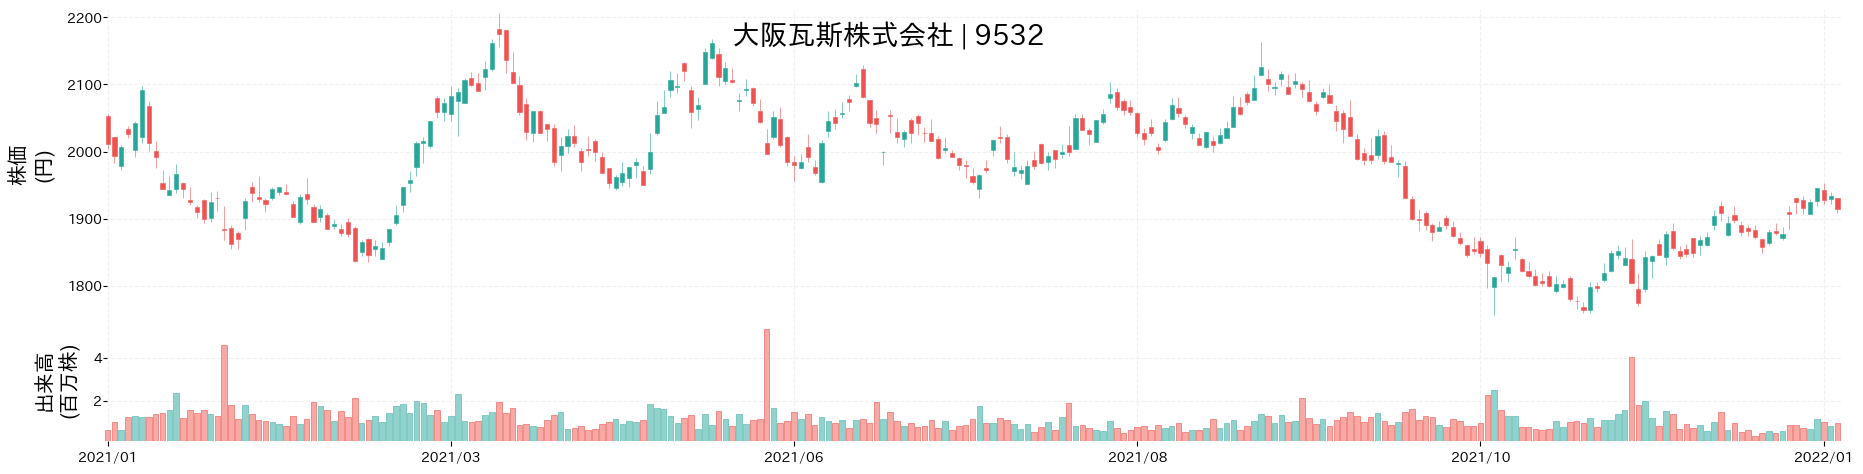 大阪瓦斯の株価推移(2021)